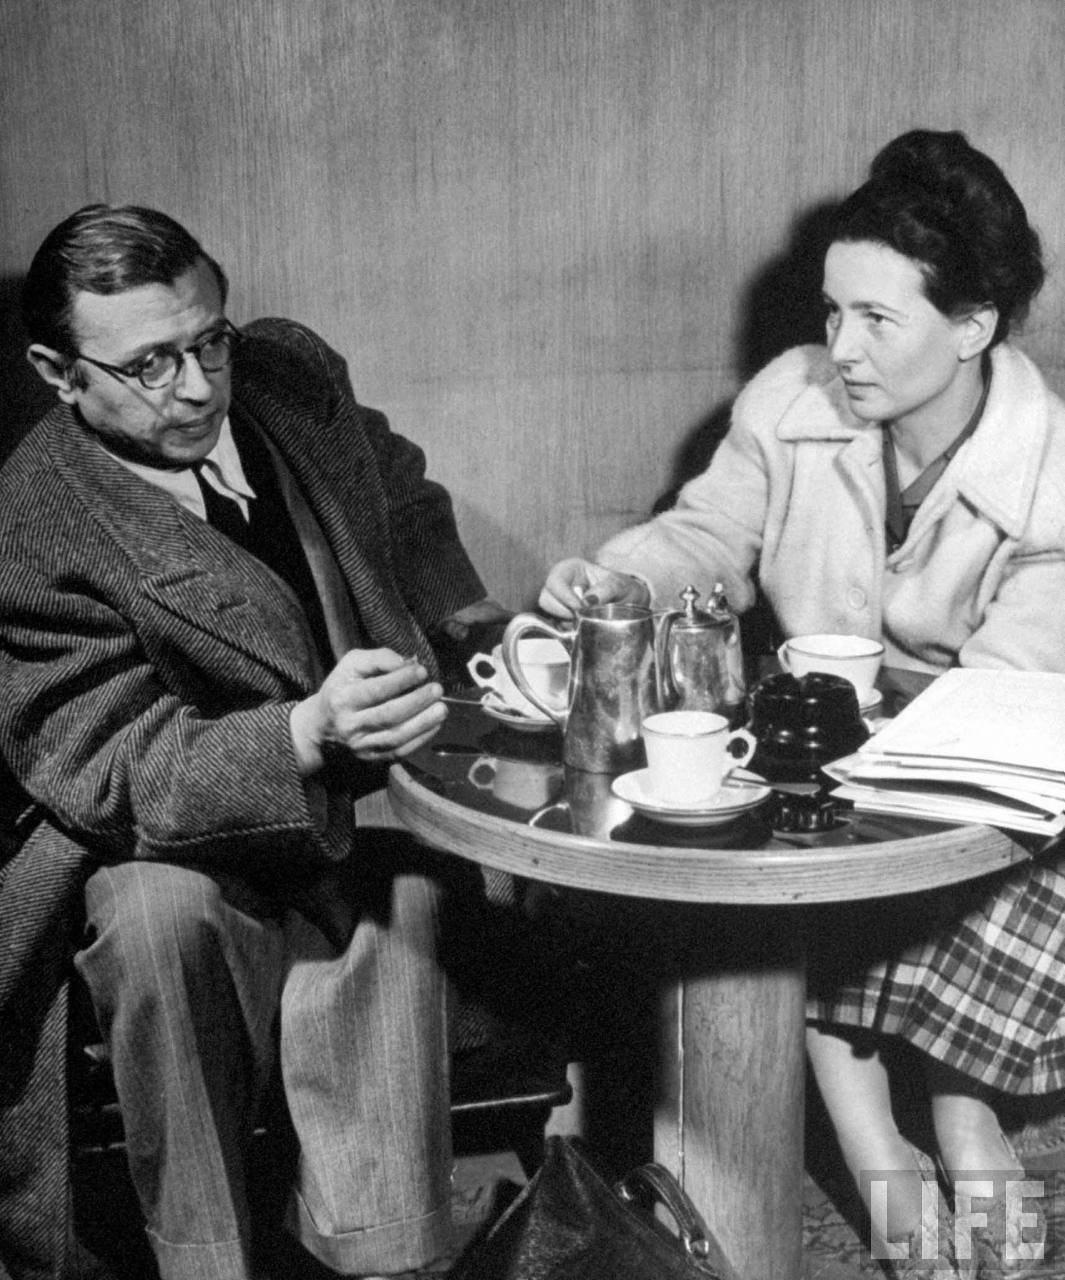 Leitura, um exercício generoso, segundo Sartre e Beauvoir